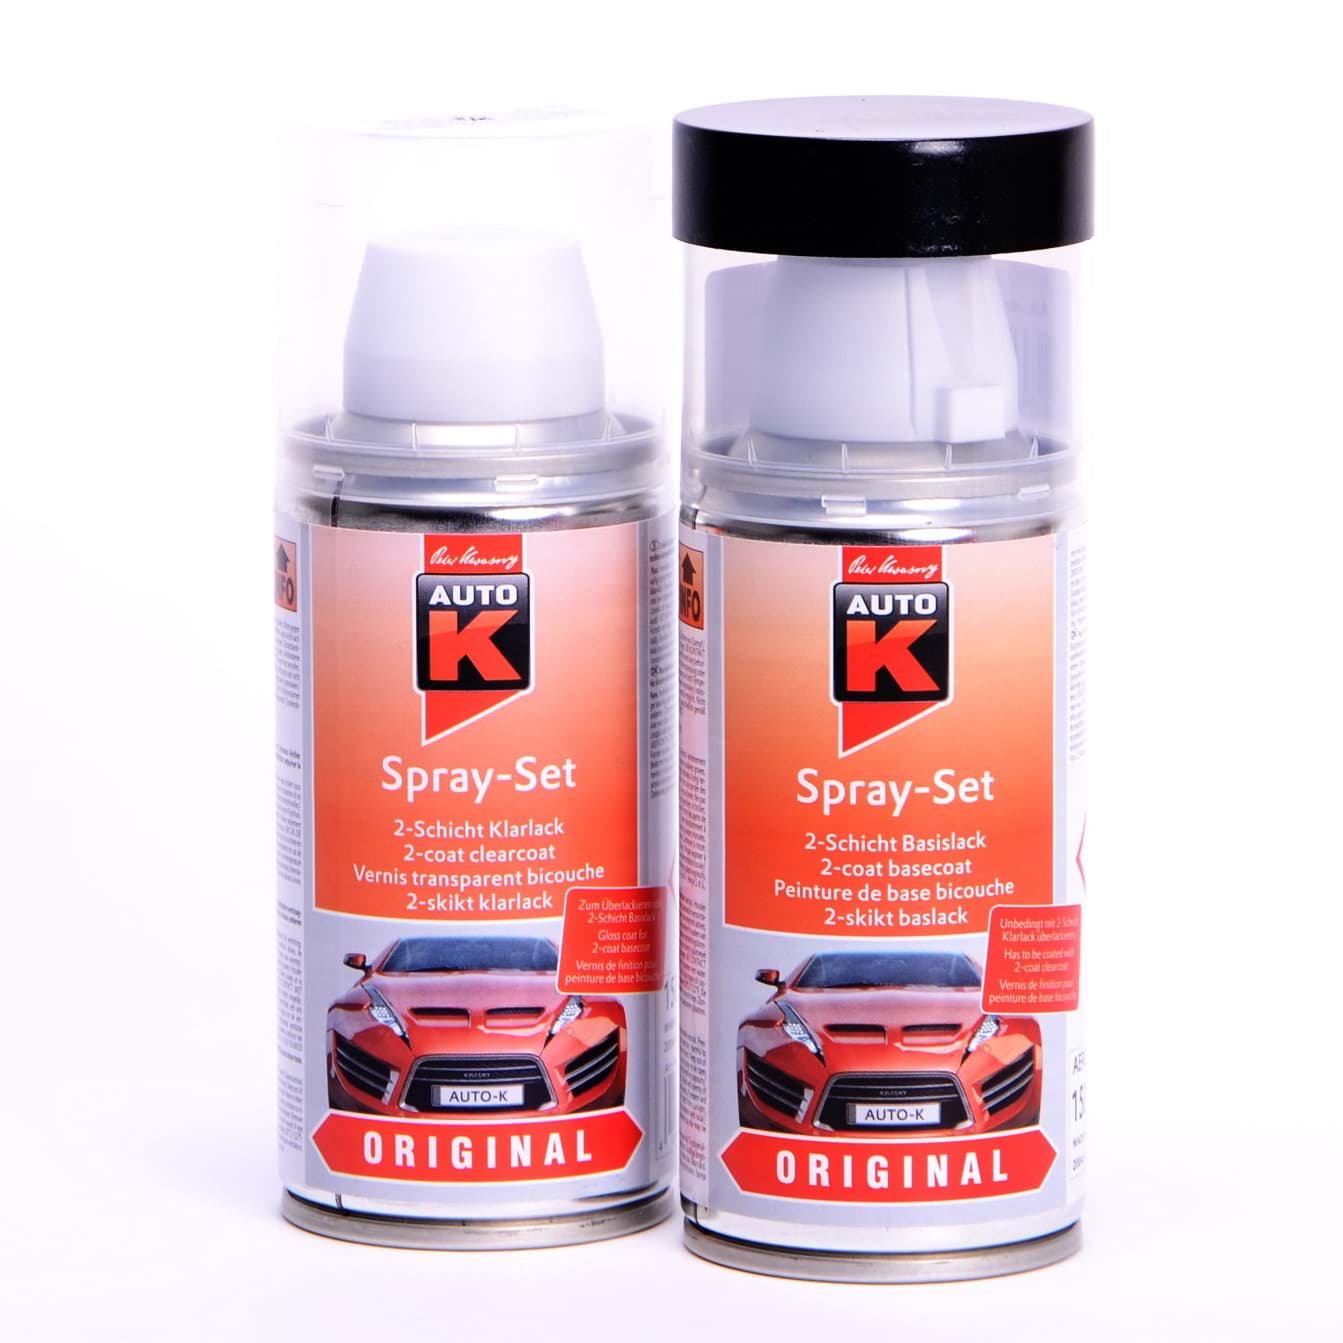 Obraz Auto-K Spray-Set Autolack für Peugeot KMF Bleu Recife Nacre met 42370